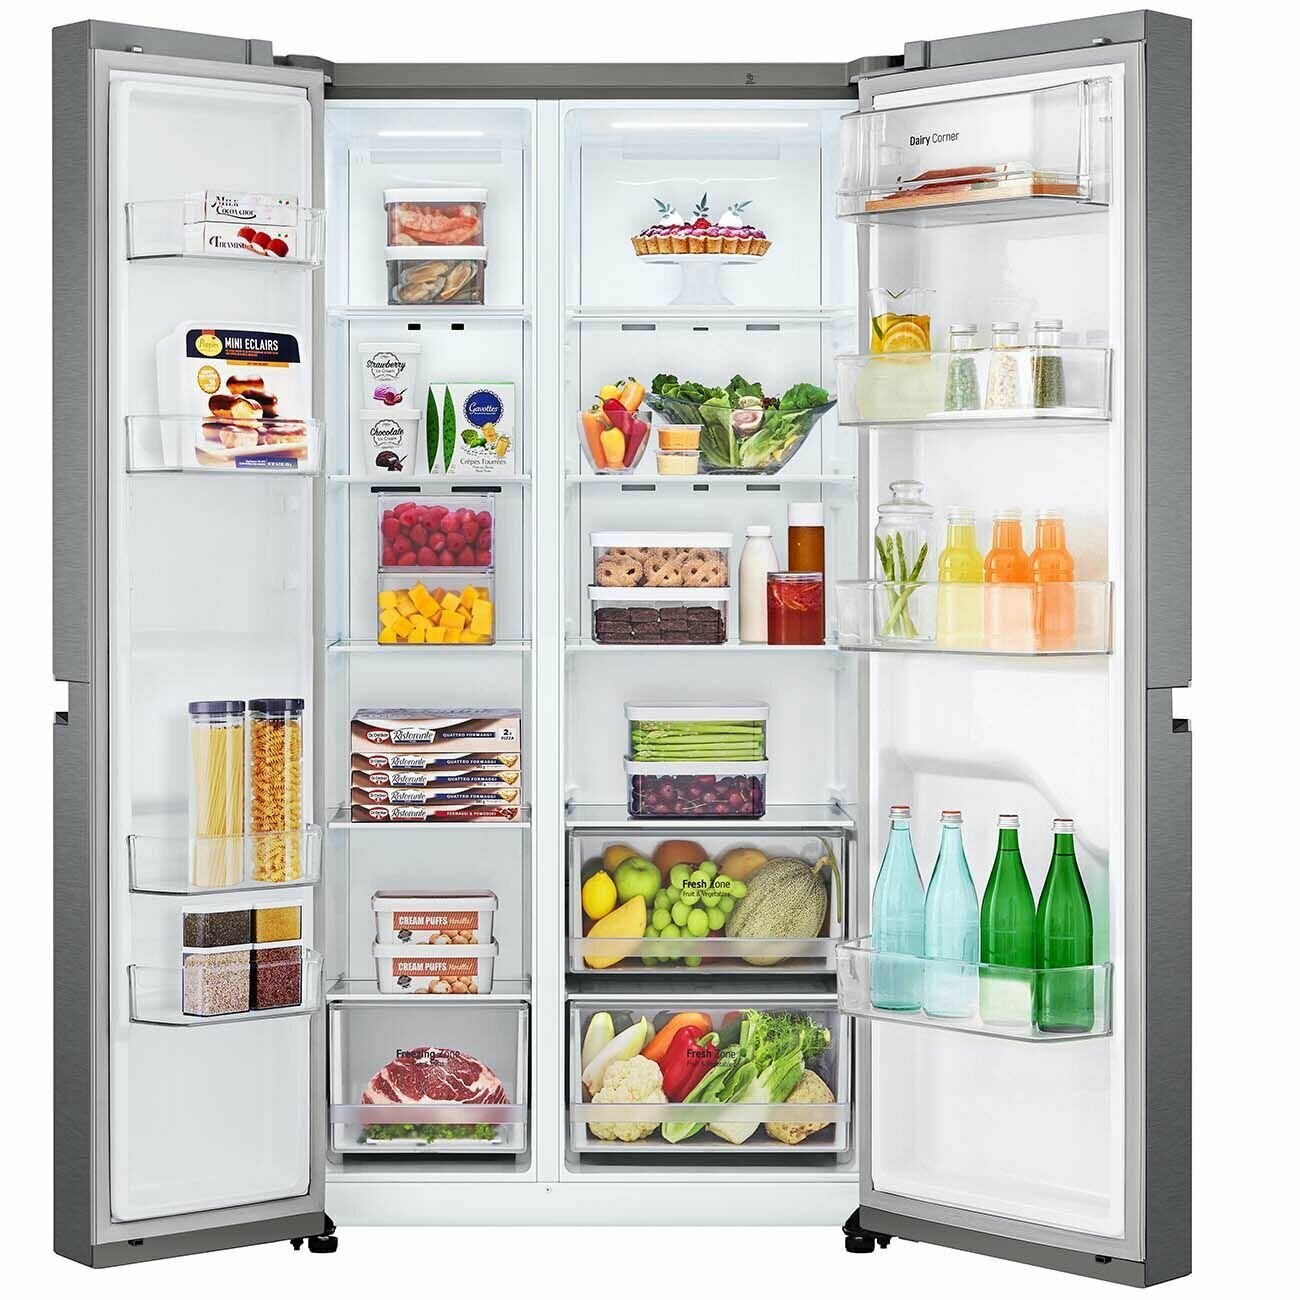 Холодильник (Side-by-Side) LG GC-B257JLYV